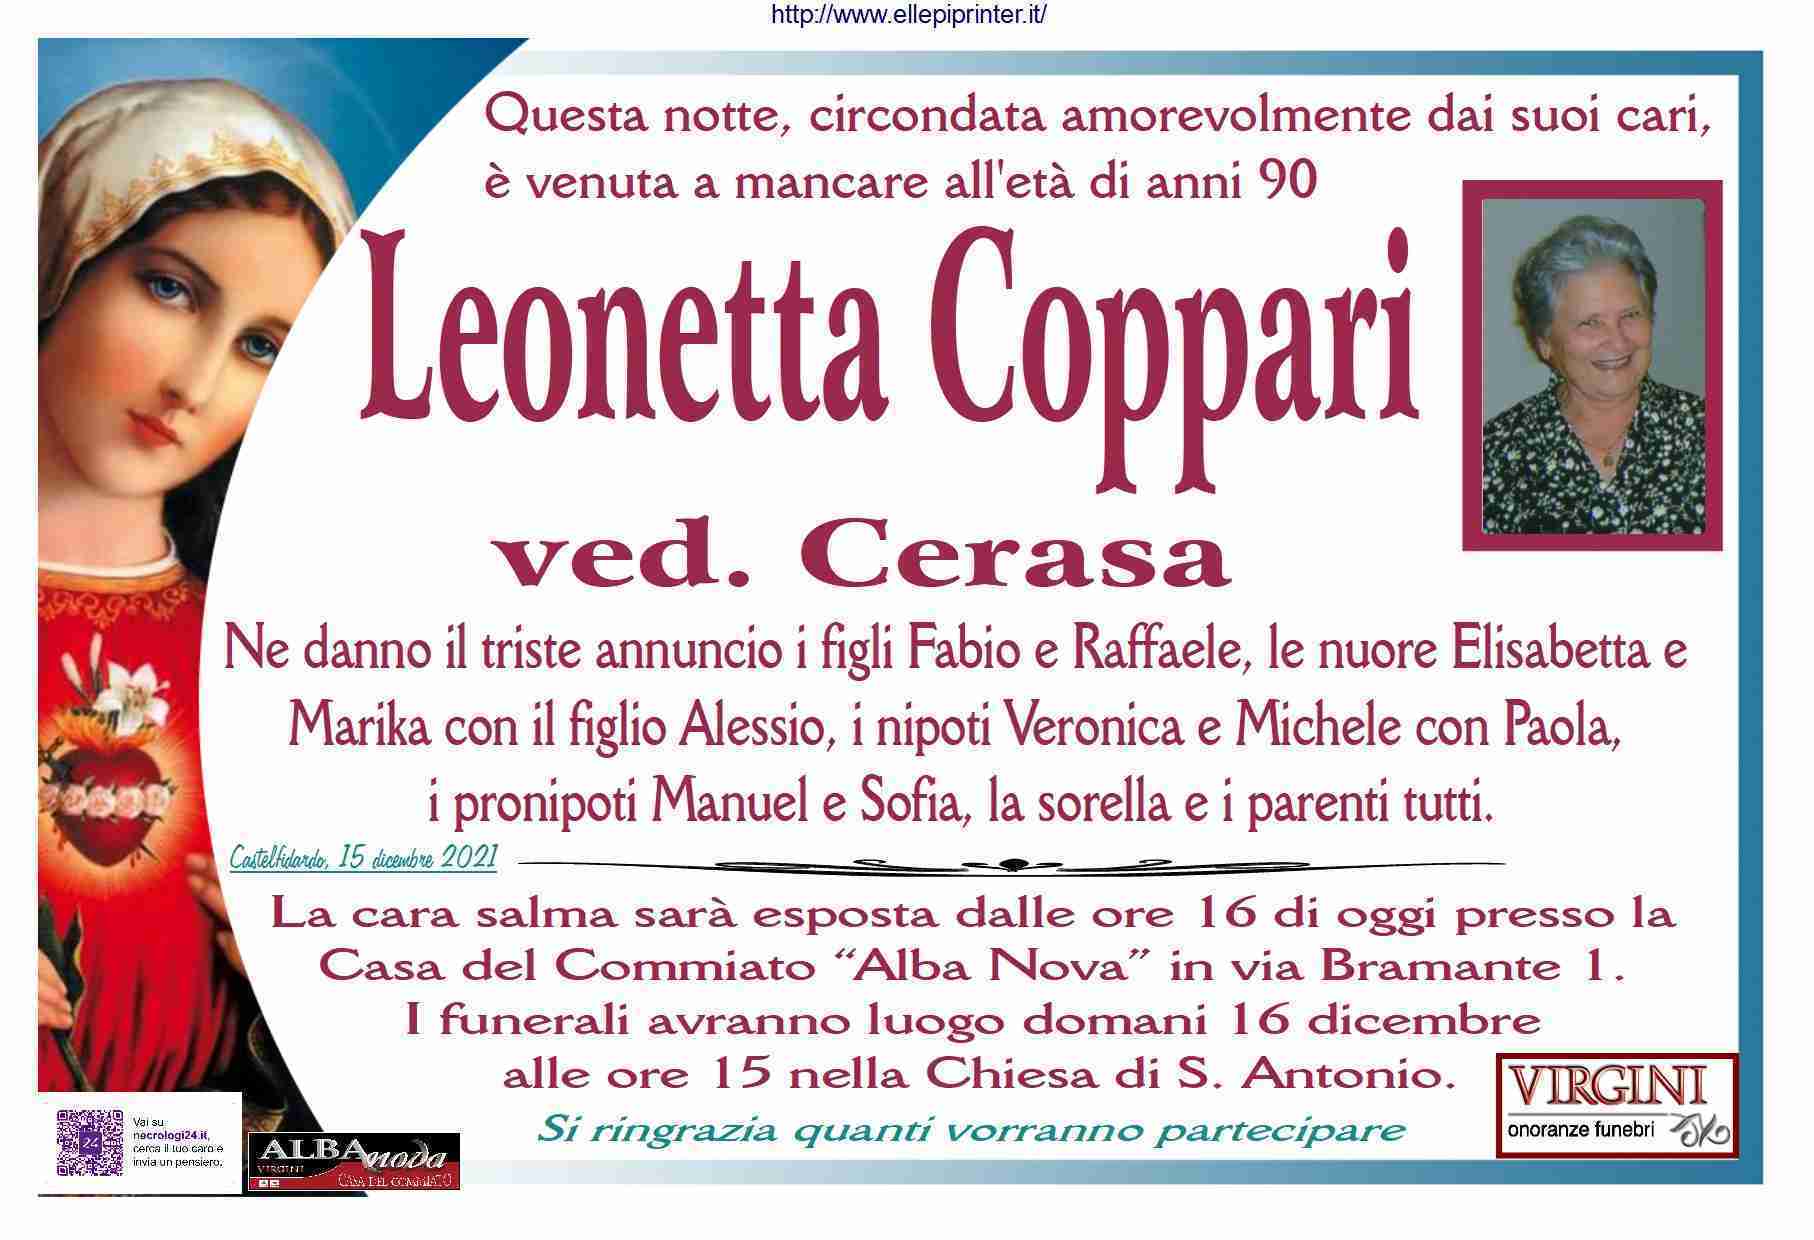 Leonetta Coppari